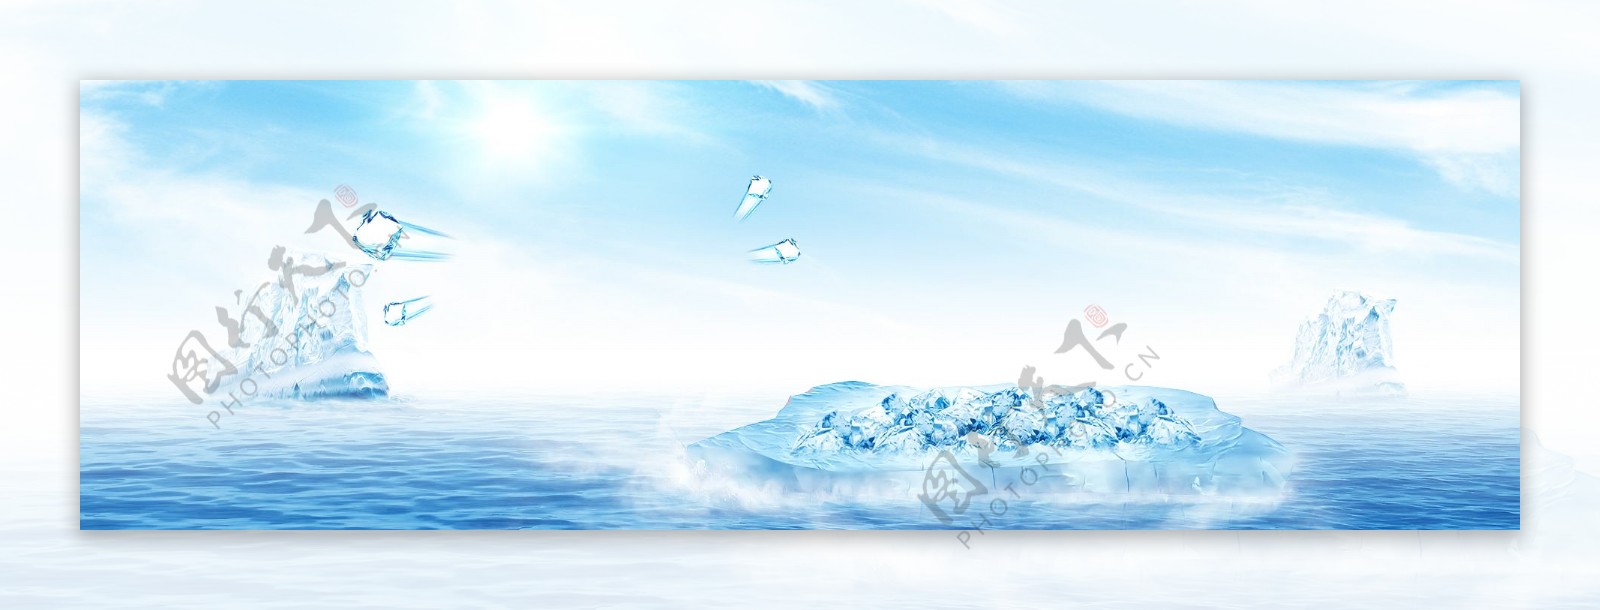 蓝色海洋水滴背景图